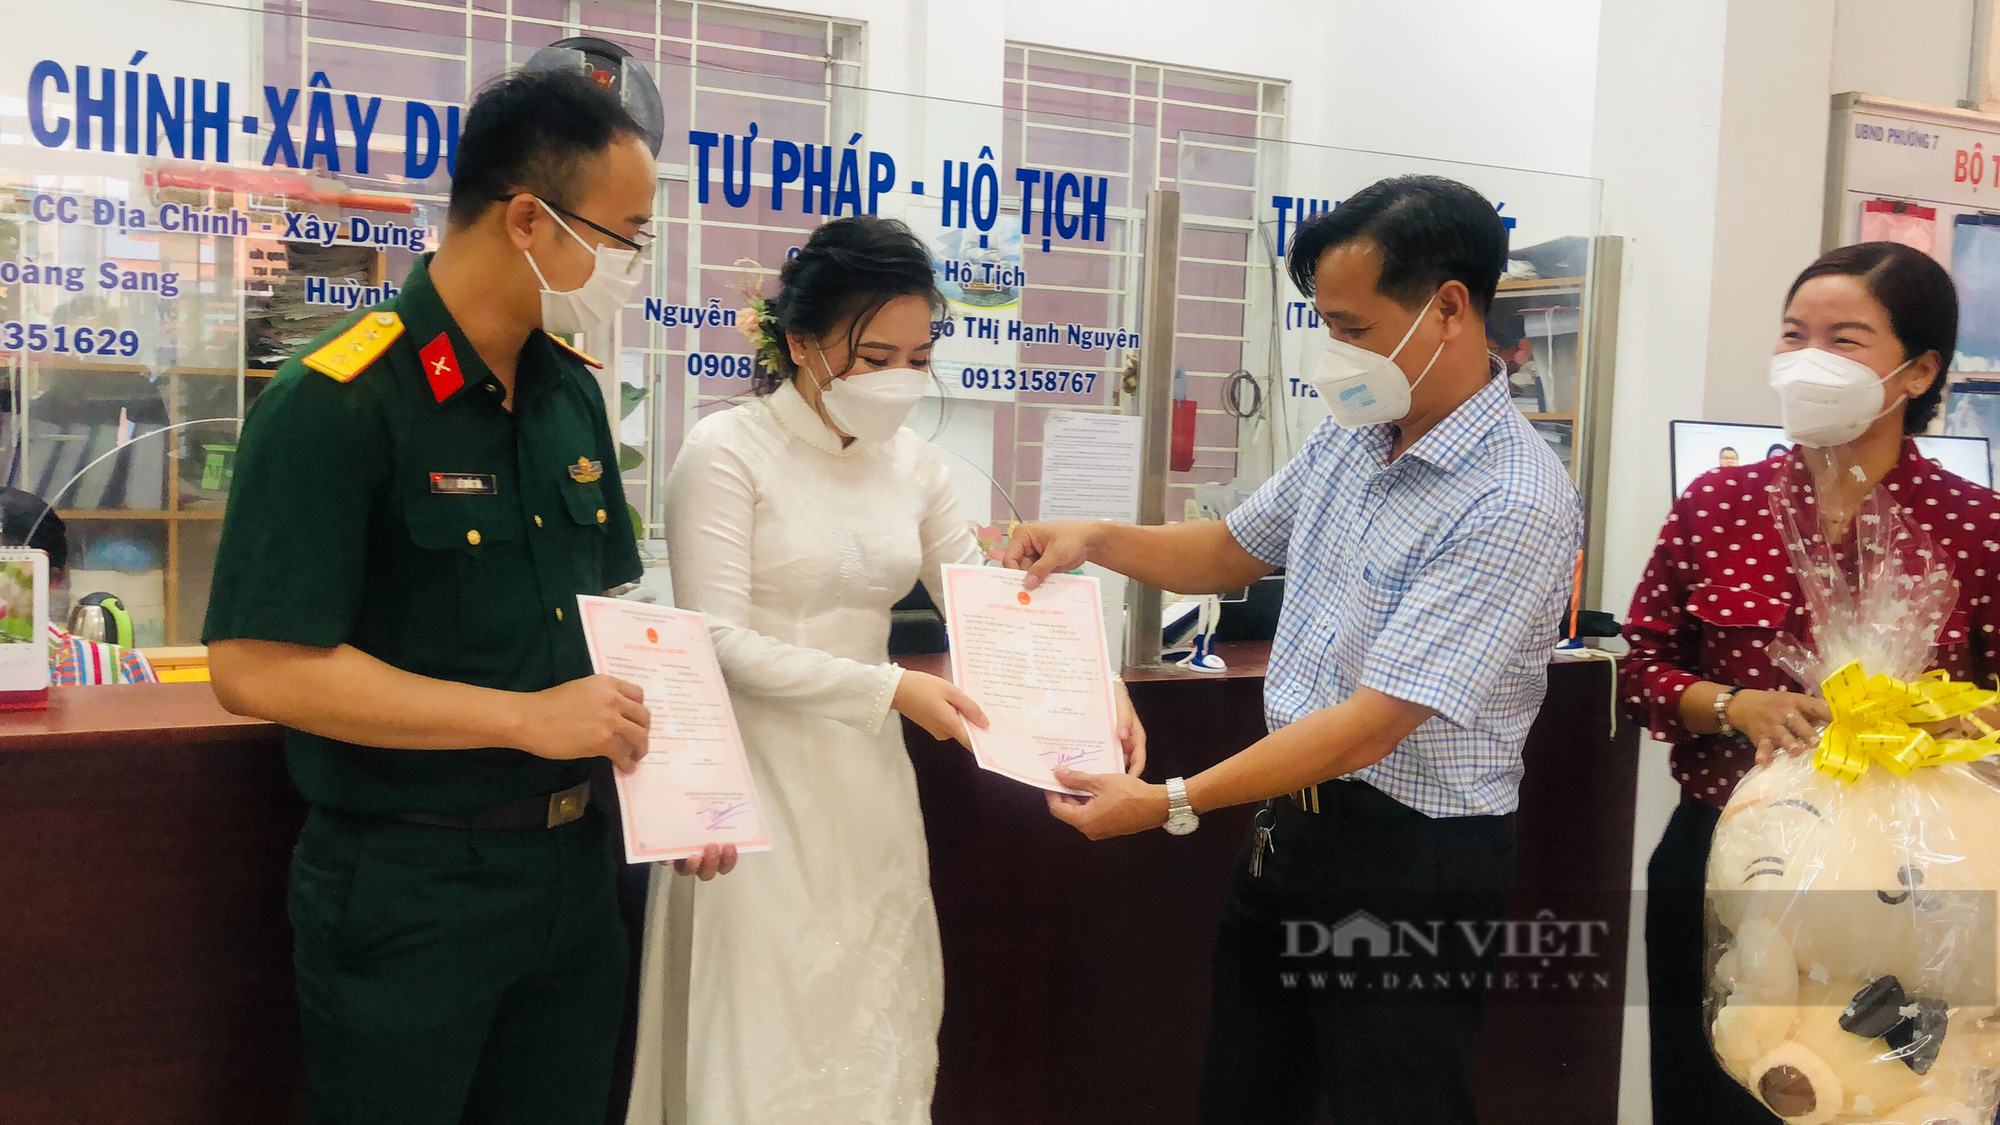 Chàng Sĩ quan quay lại TP.HCM đăng ký kết hôn với nàng tình nguyện viên: Trái ngọt sau đại dịch Covid-19 - Ảnh 4.